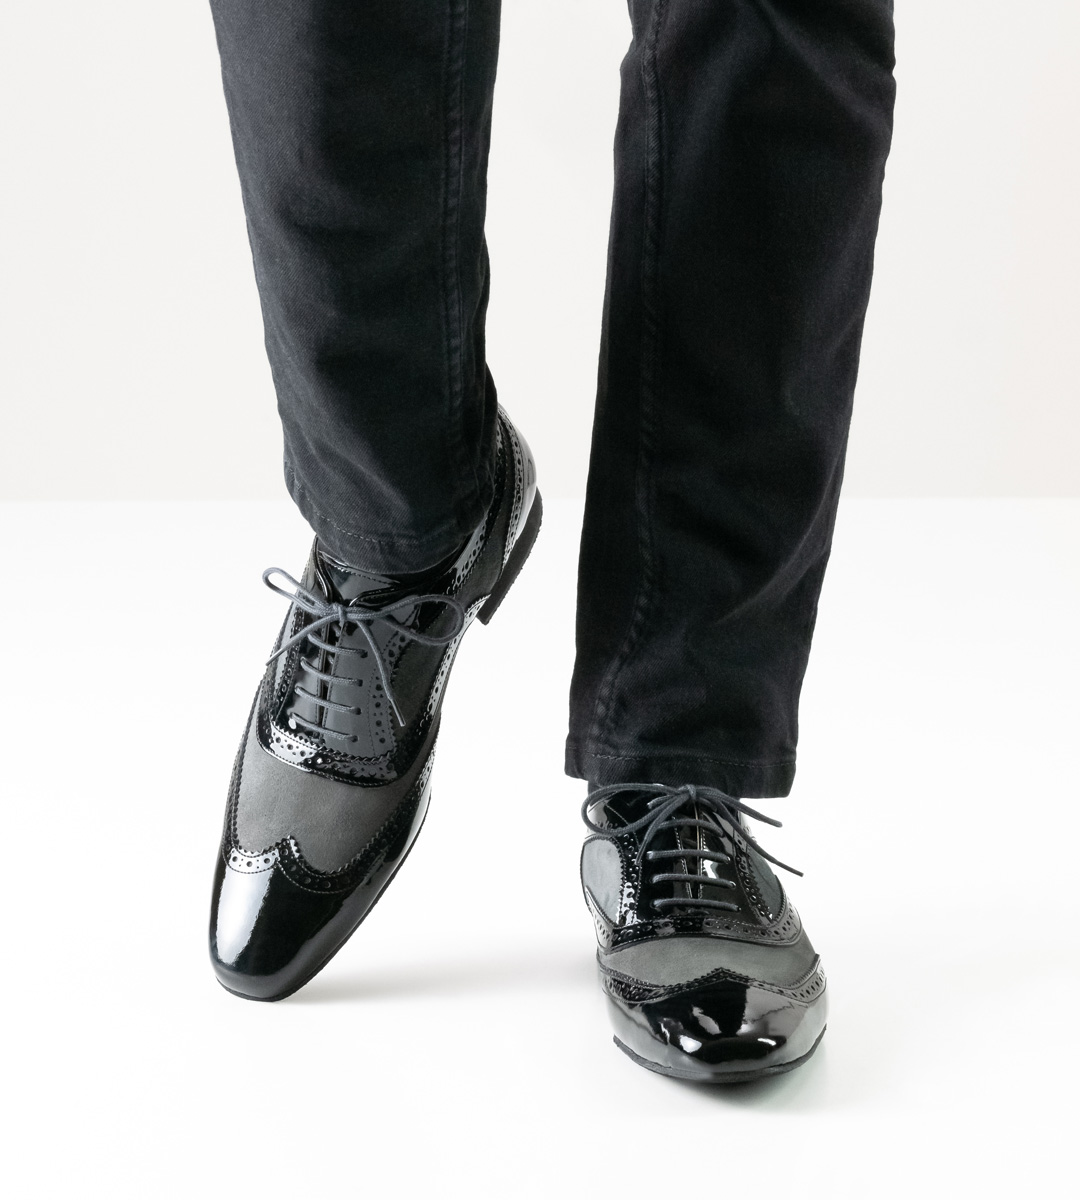 Chaussures de danse pour hommes de Nueva Epoca avec micro-talon de 2 cm en combinaison avec un jean noir